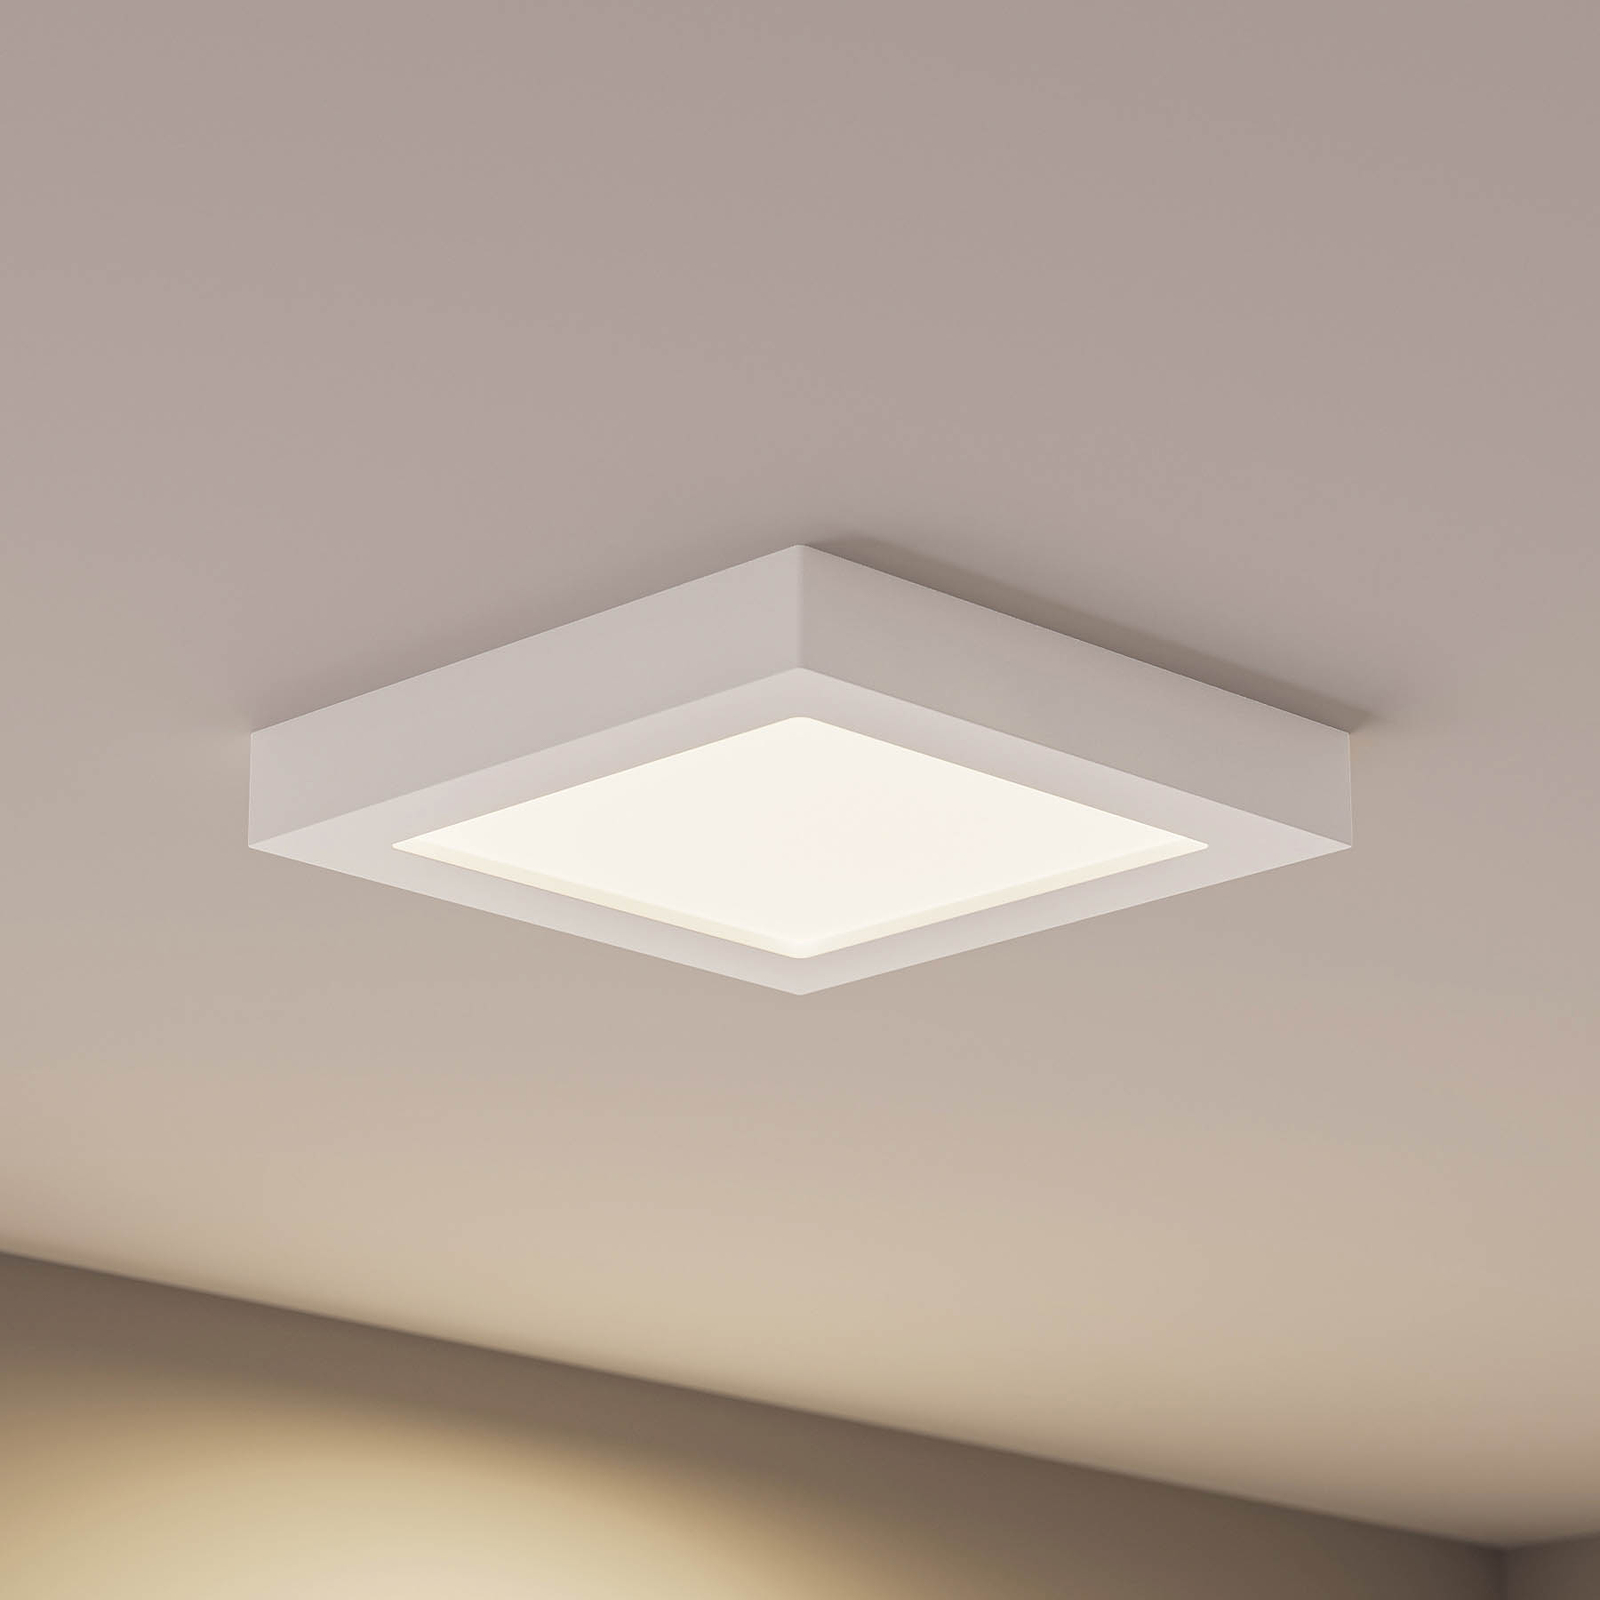 Prios Alette LED stropní světlo, bílé, 22,7cm, 24W